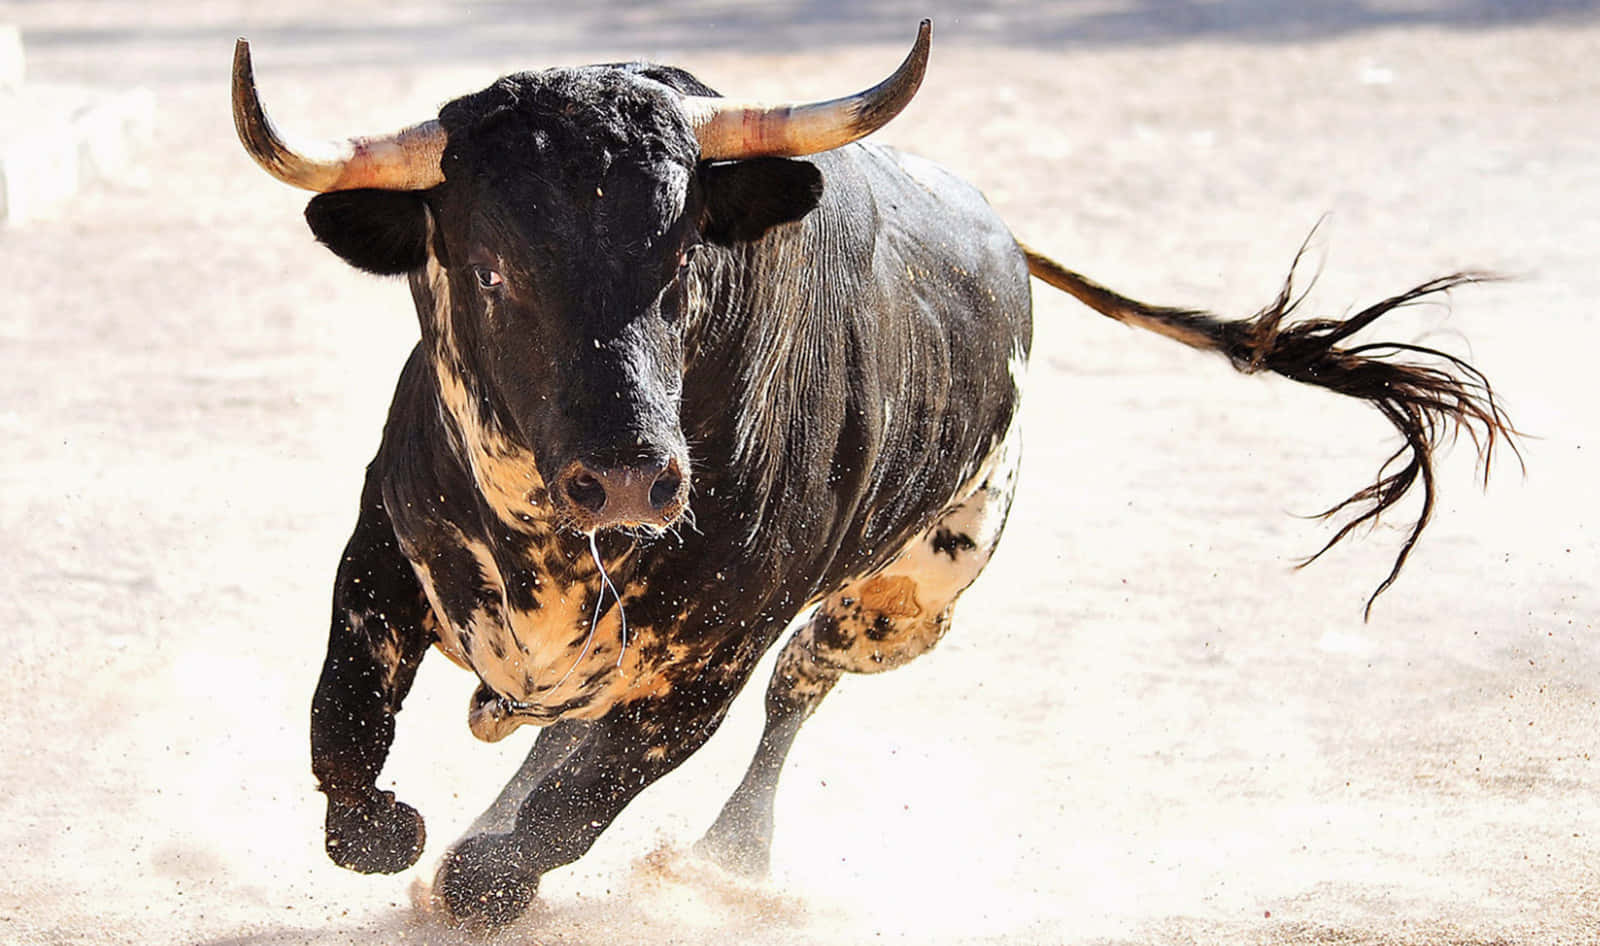 Spanish Black Orange Bull Picture